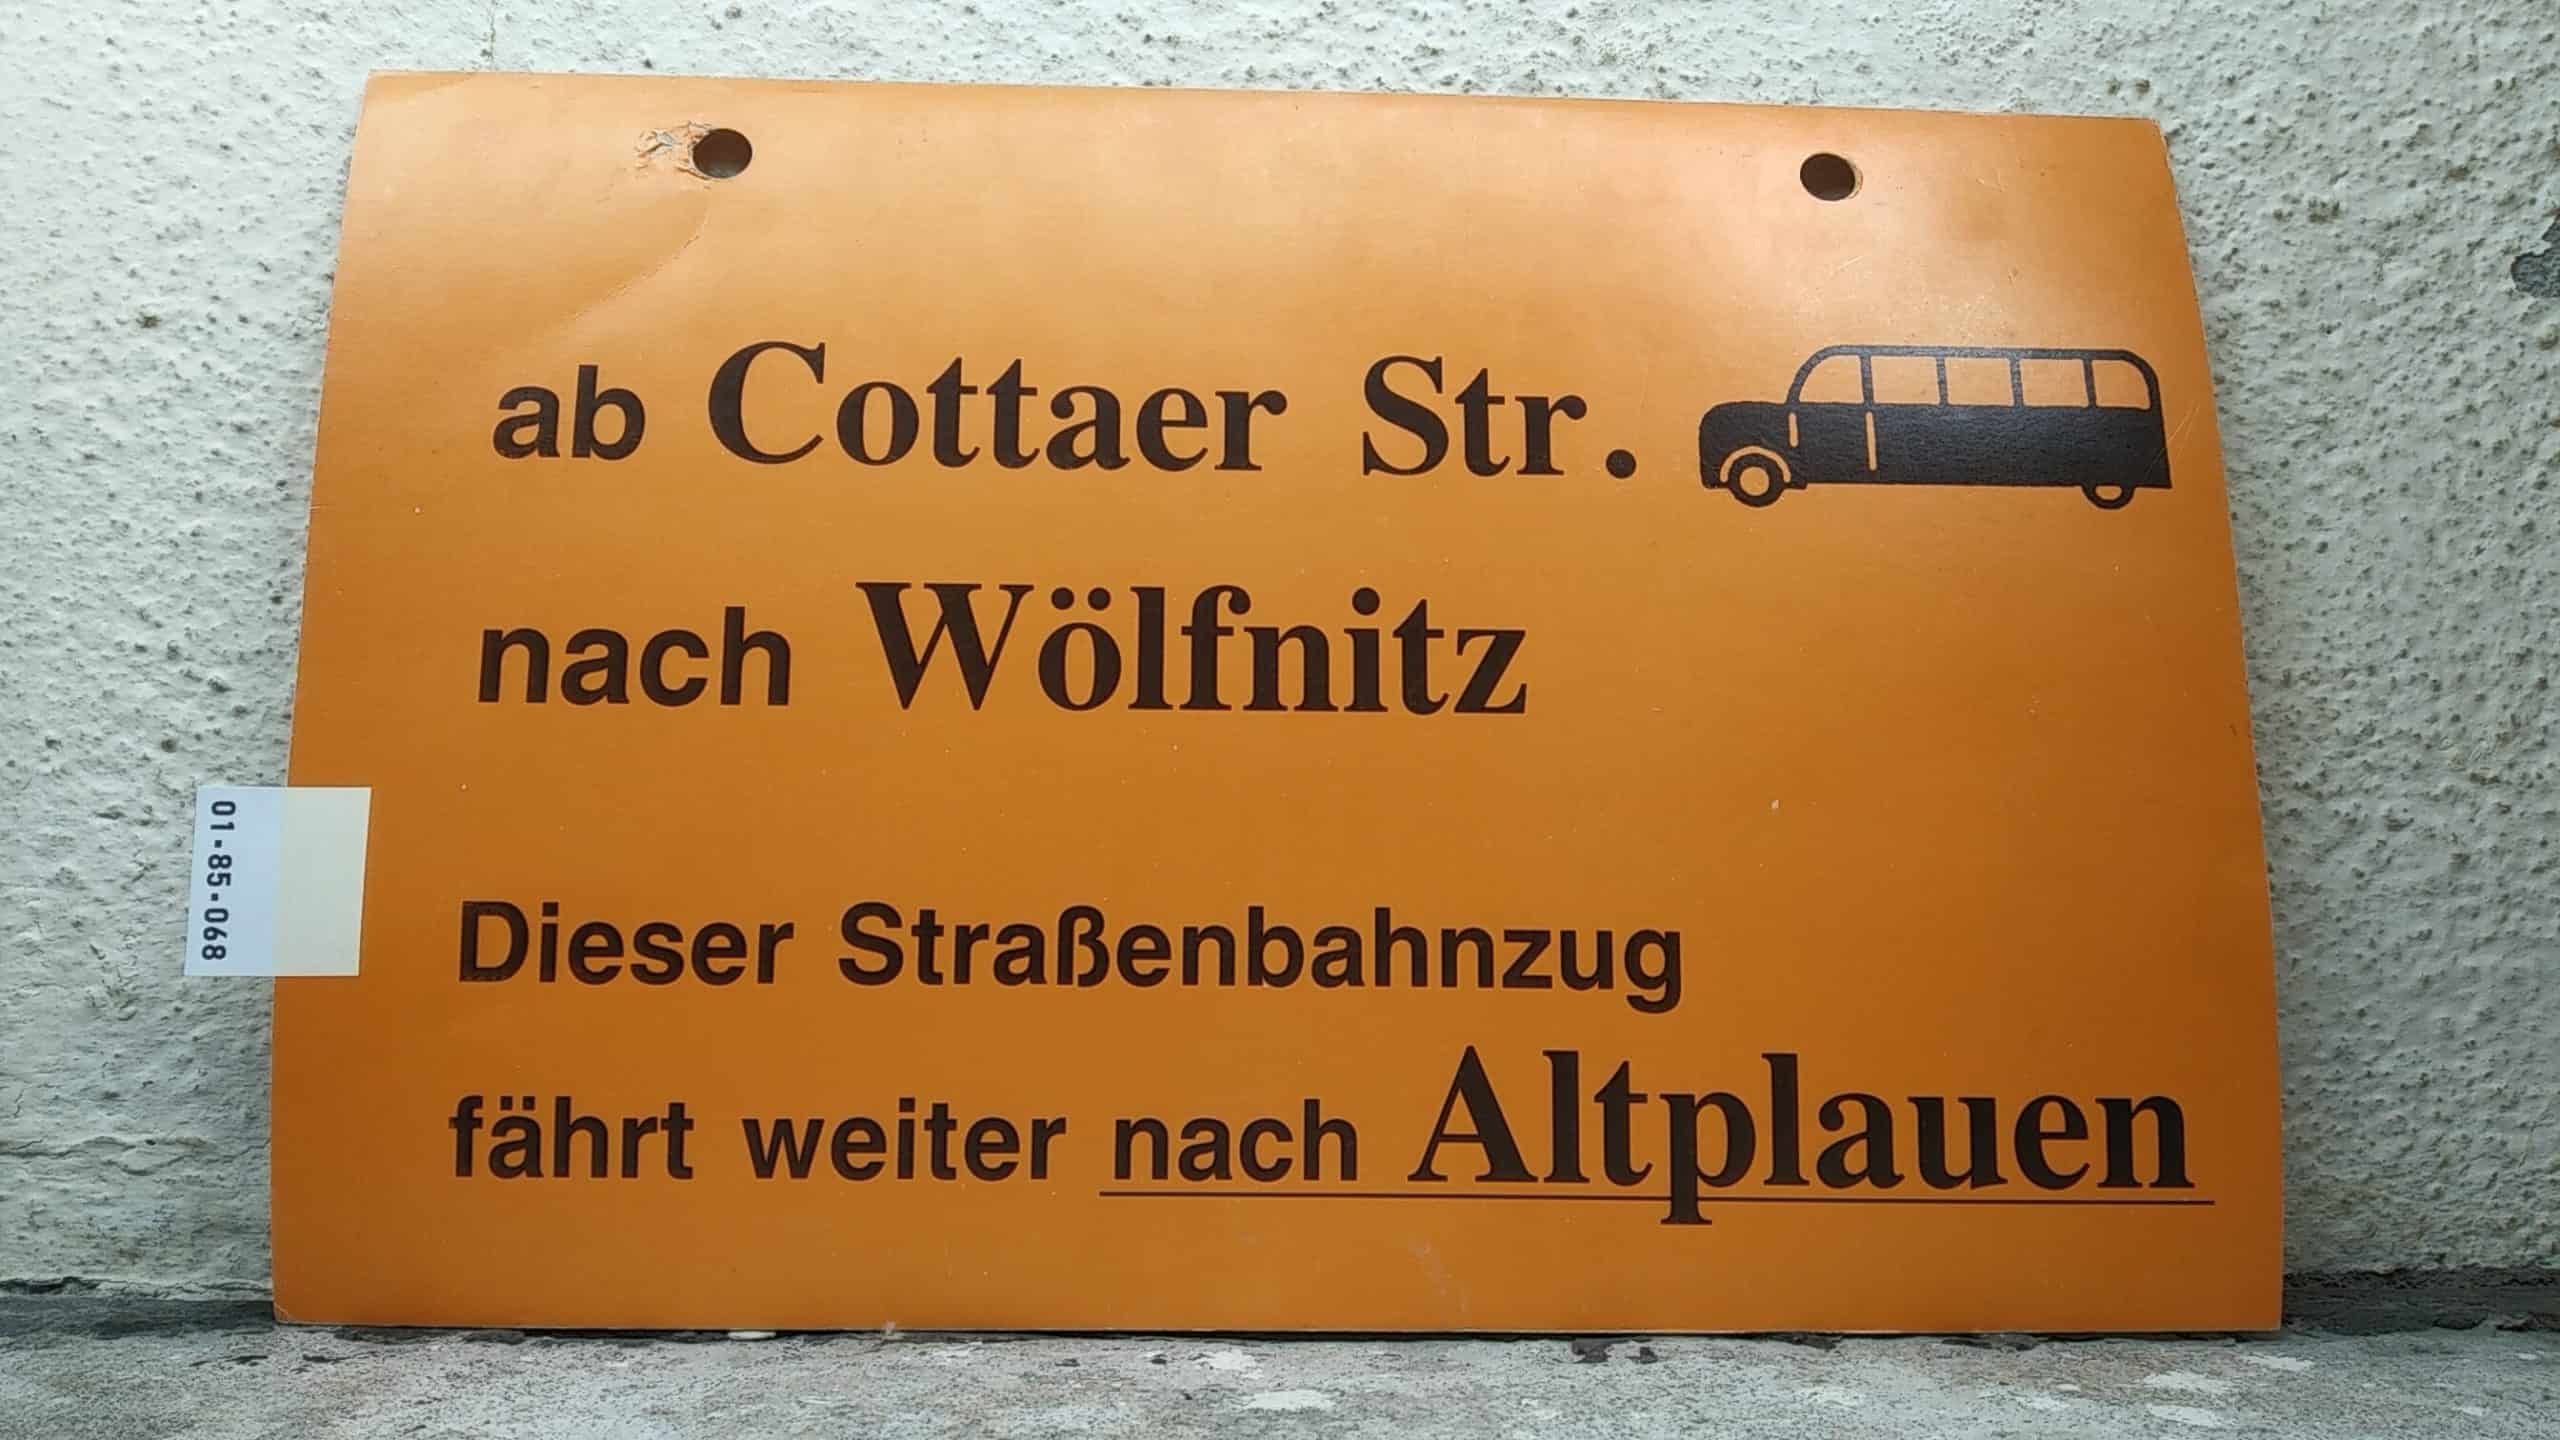 Ein seltenes Straßenbahn-Umleitungsschild aus Dresden: ab Cottaer Str. [Bus alt] nach Wölfnitz Dieser Straßenbahnzug fährt weiter nach Altplauen